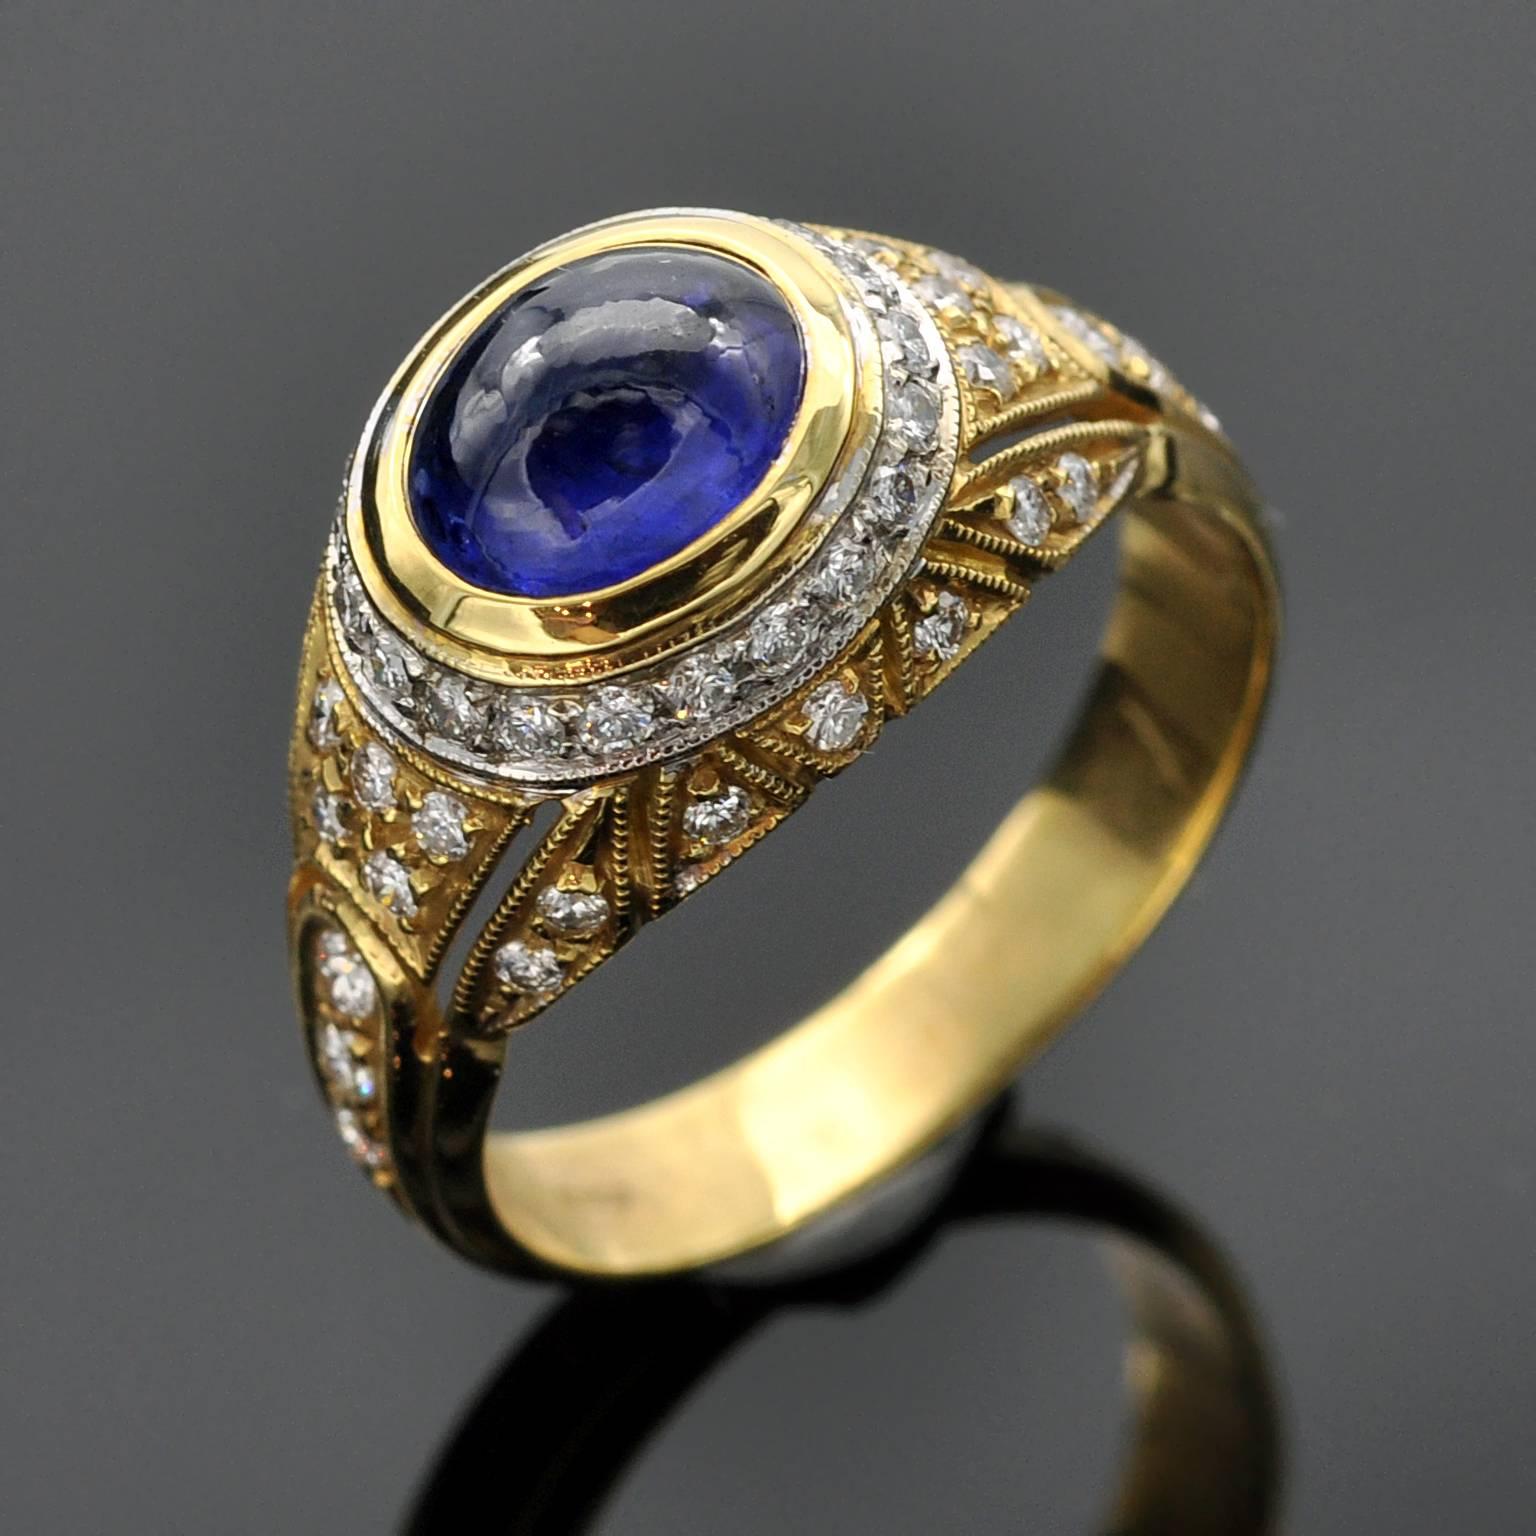 Atemberaubender zweifarbiger gewölbter Ring. In seiner Mitte ein glänzender blauer Cabochon-Saphir. Die Millegrain-Fassung und die Ziselierarbeit verleihen dem Ring eine raffinierte Note.

Saphir ± 2 Karat
Diamanten : 0,50 Karat